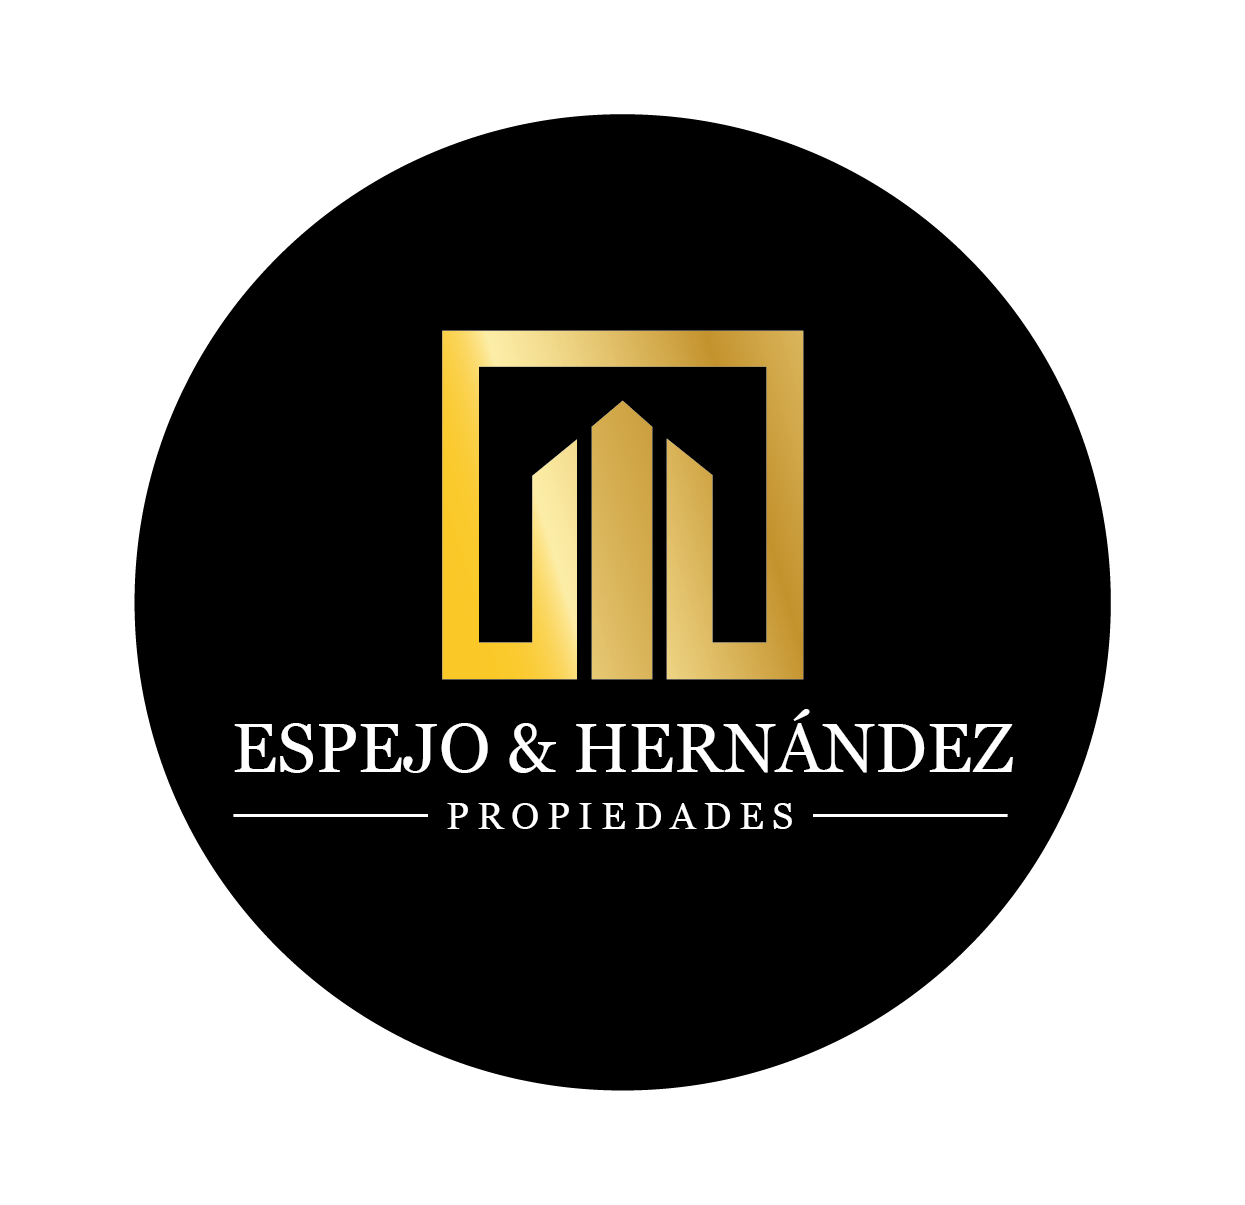 ESPEJO & HERNANDEZ  PROPIEDADES